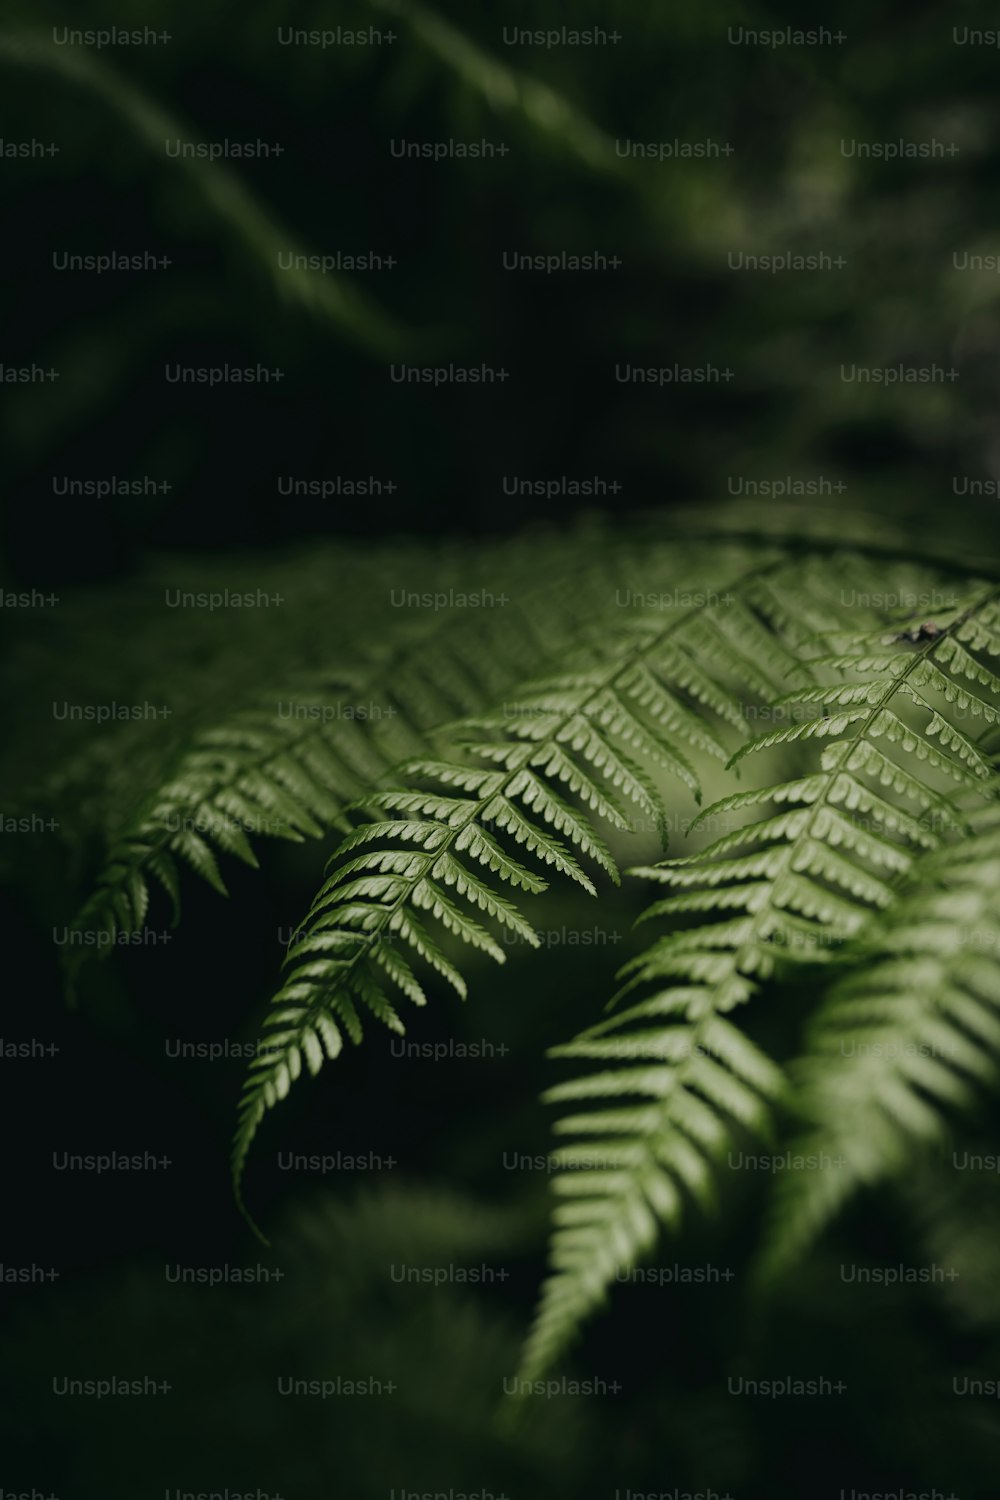 um close up de uma folha de samambaia em uma floresta